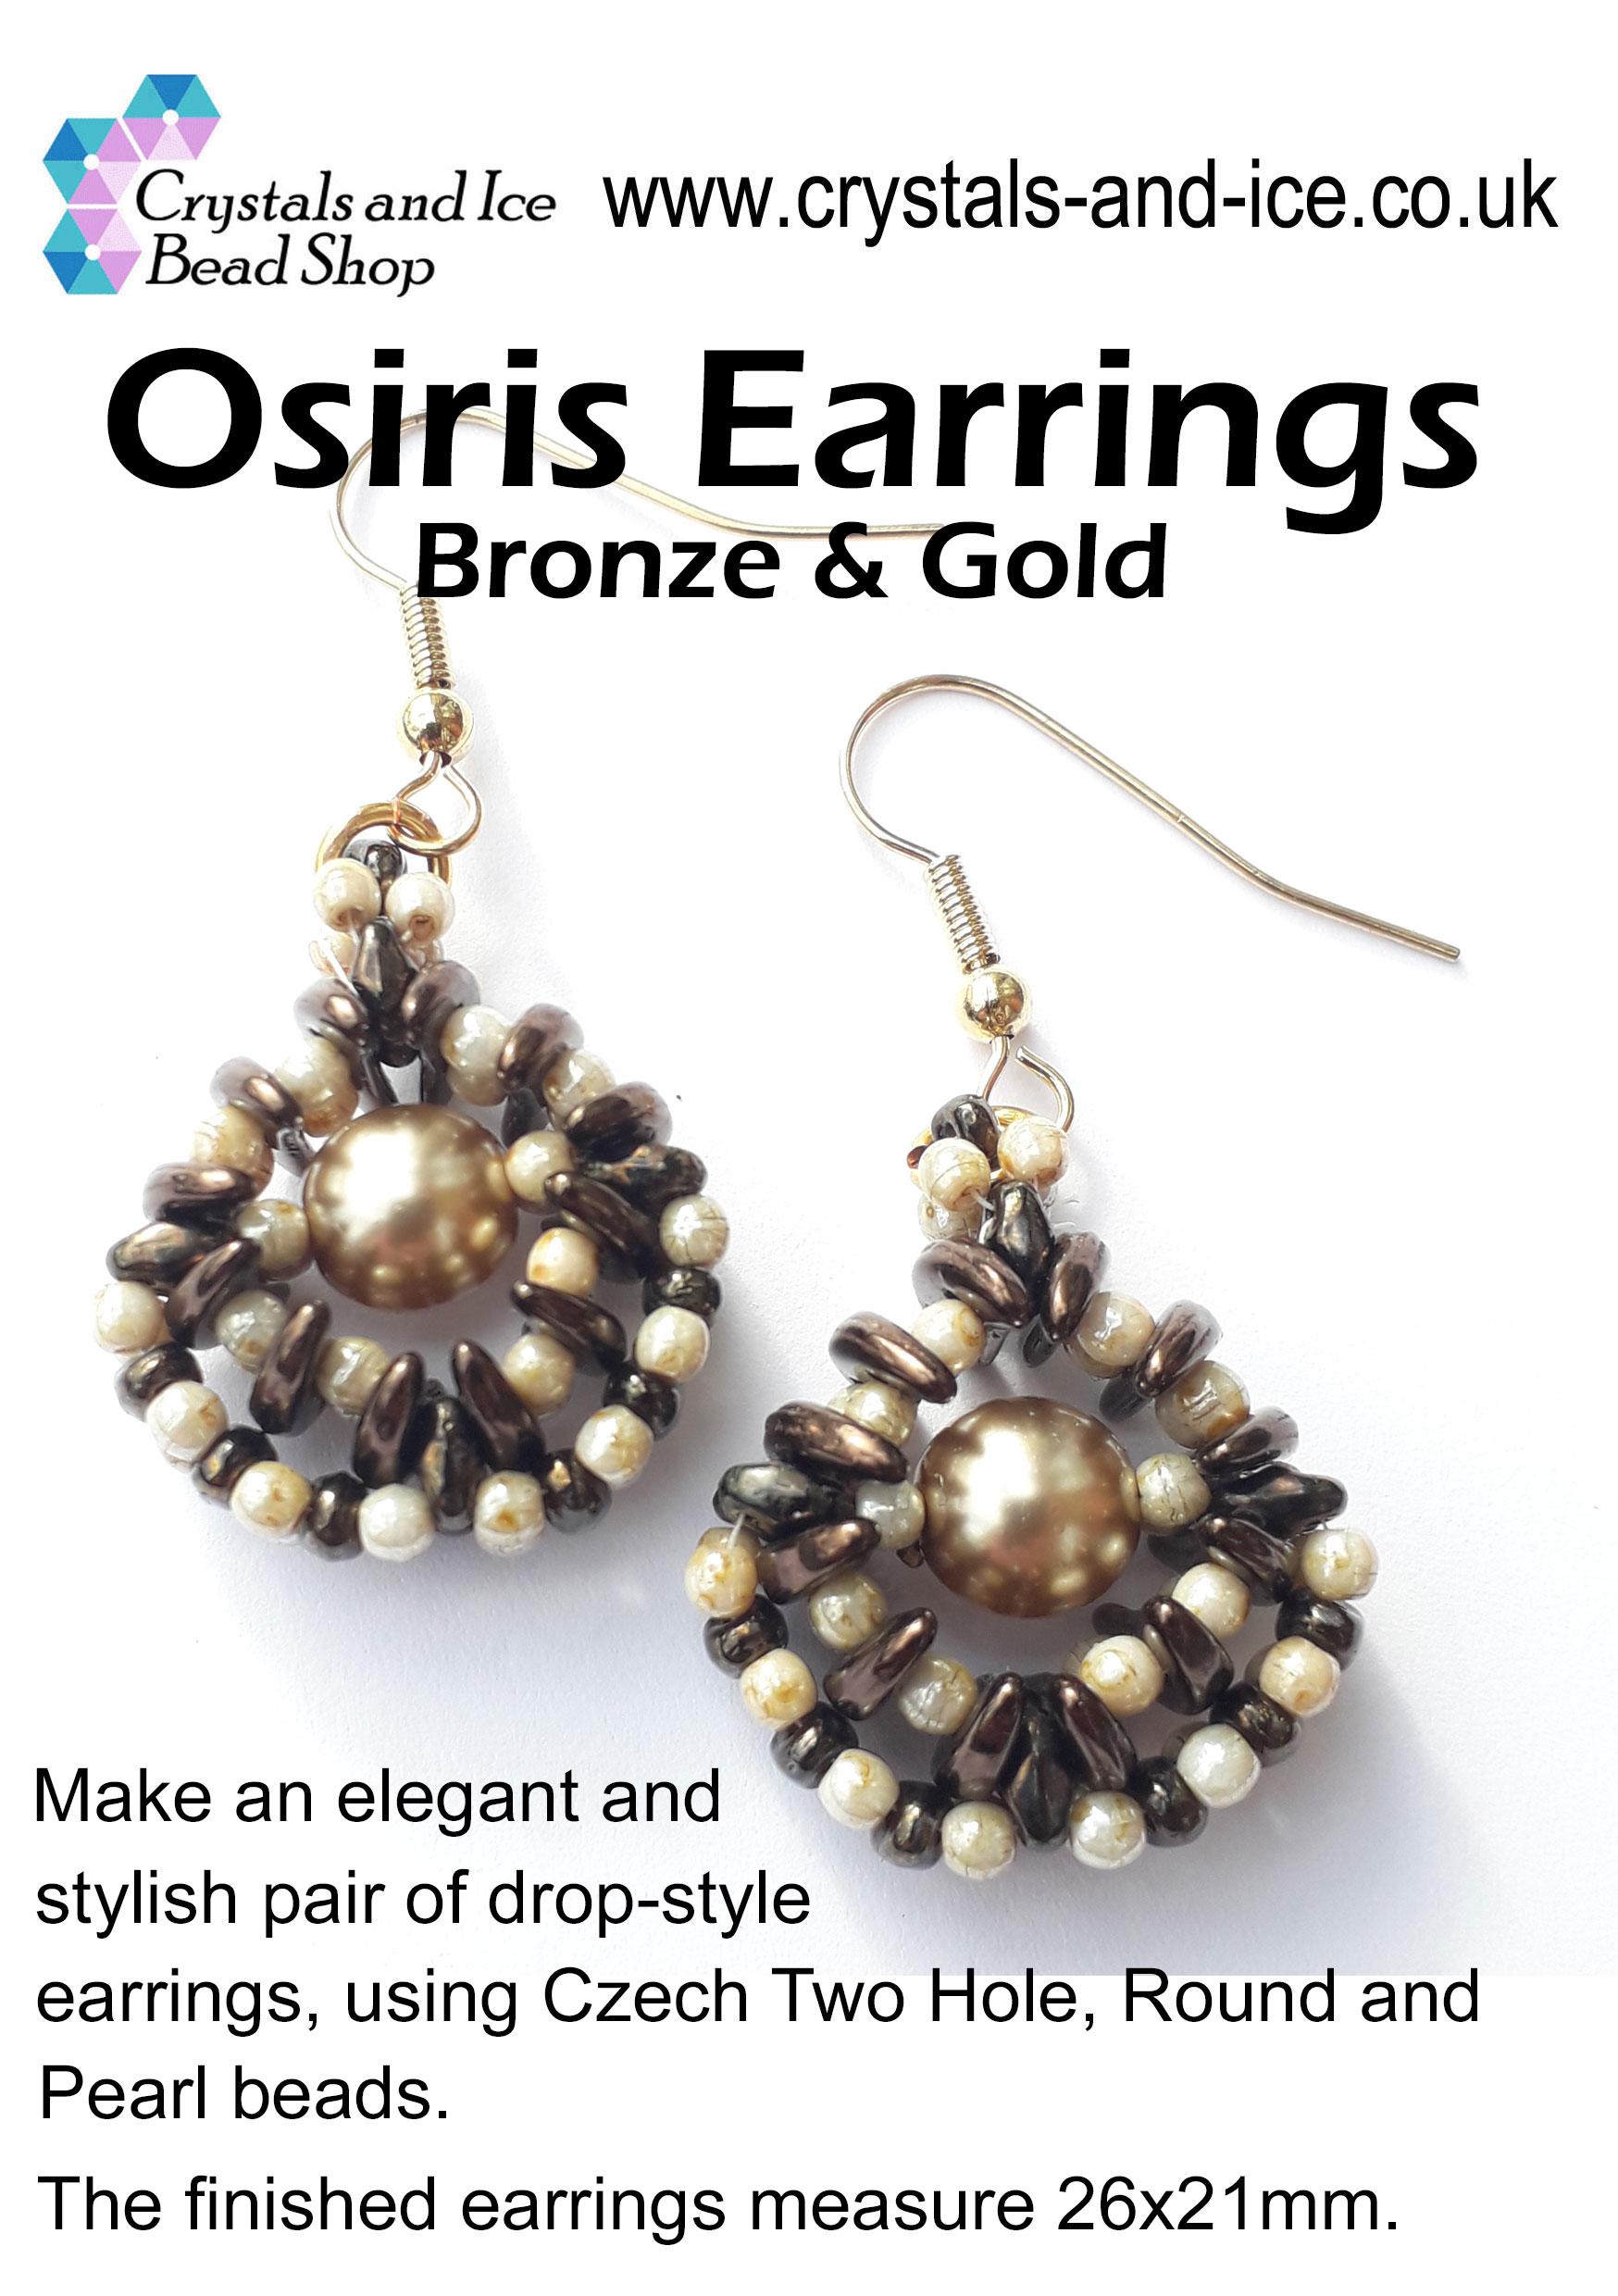 Osiris Earrings Kit - Bronze and Gold